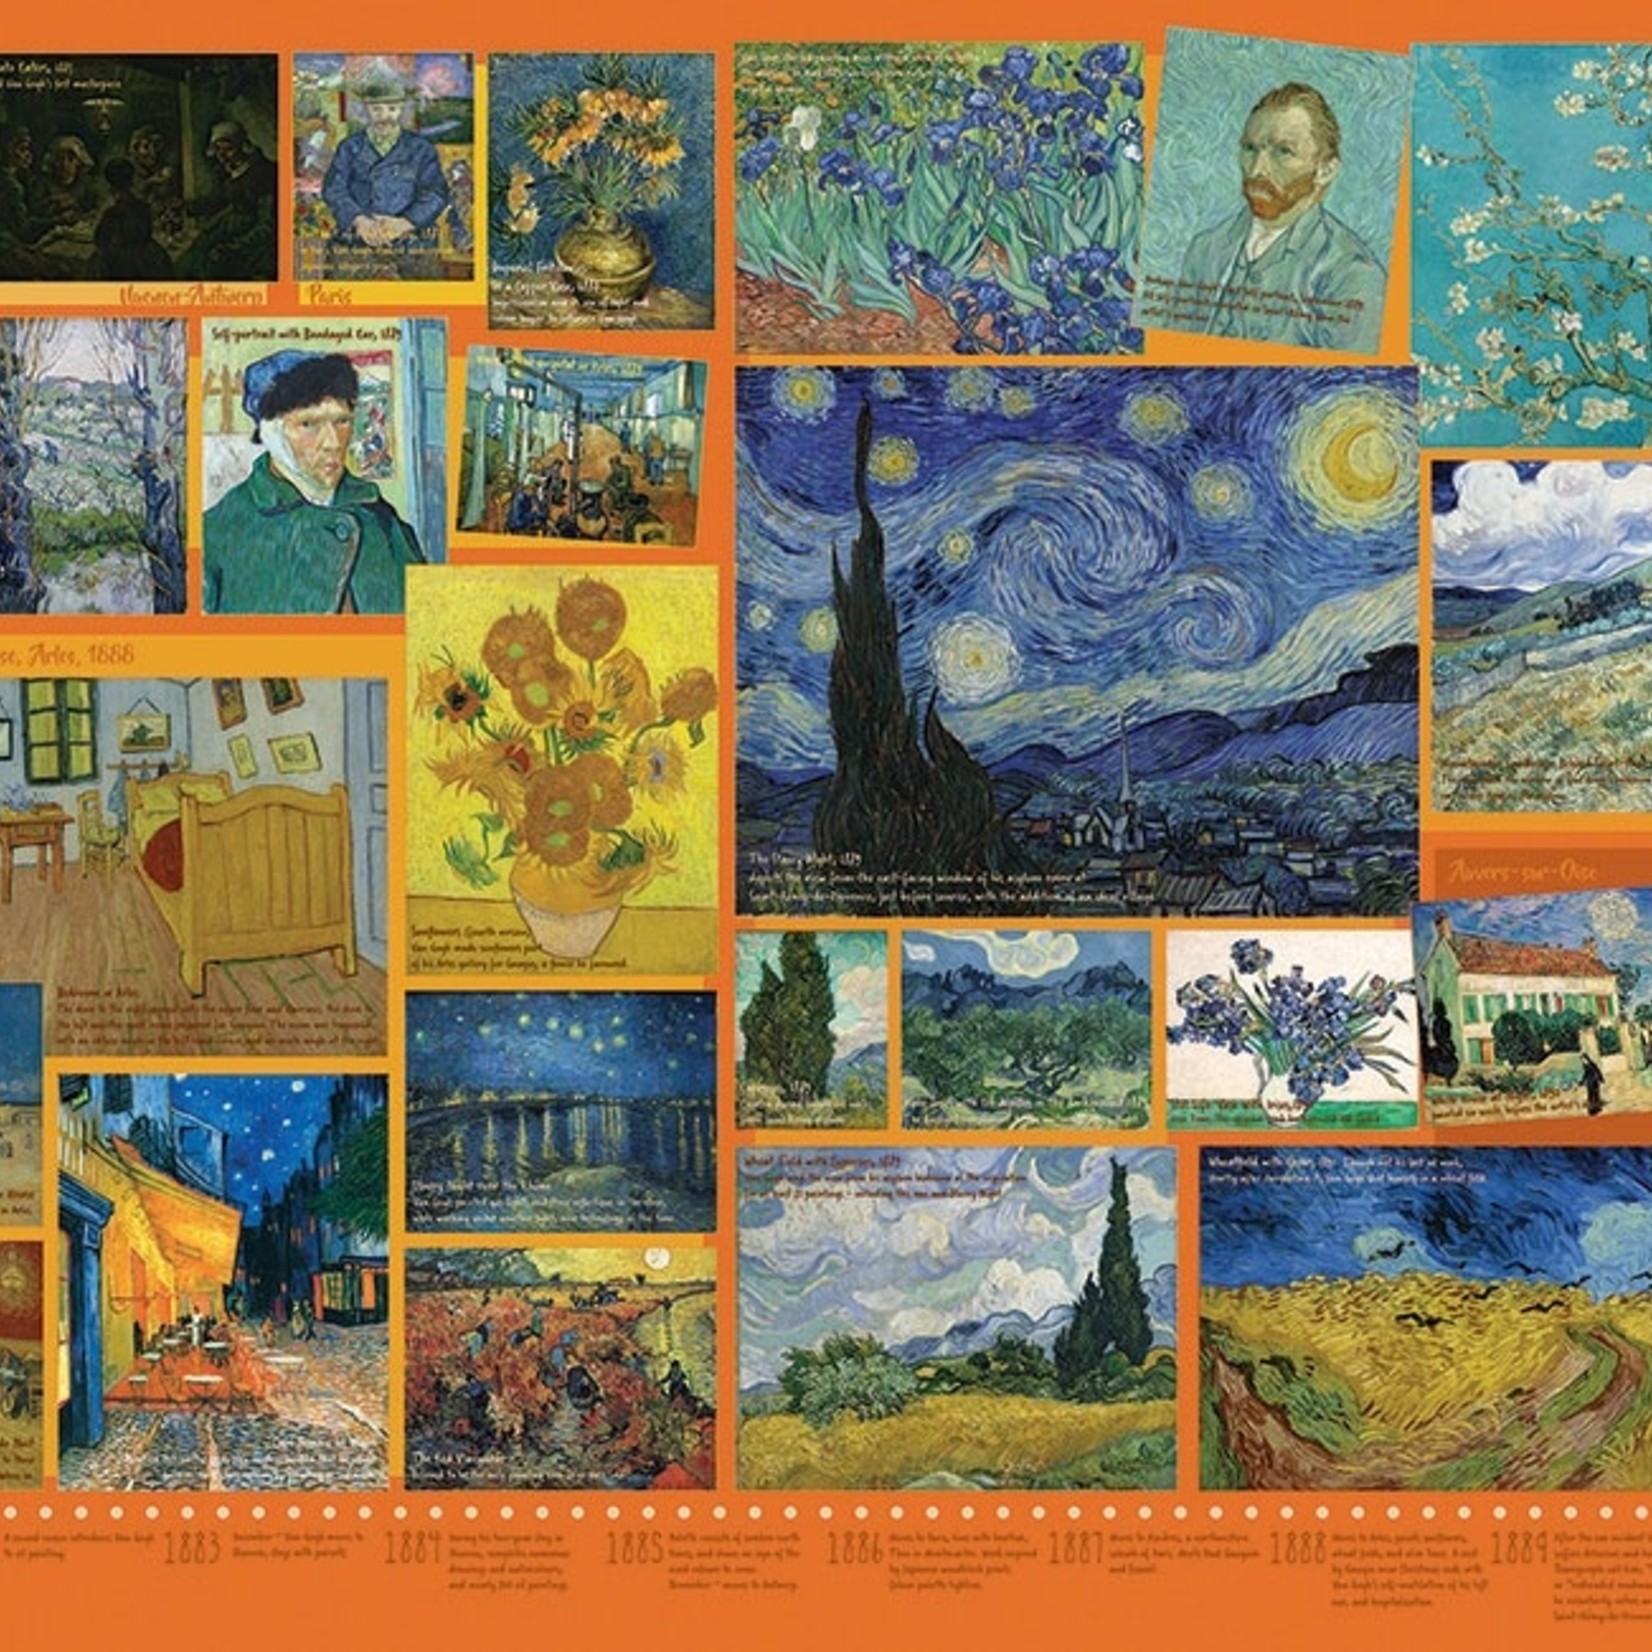 Cobble Hill *****Cobble Hill 1000 - Van Gogh